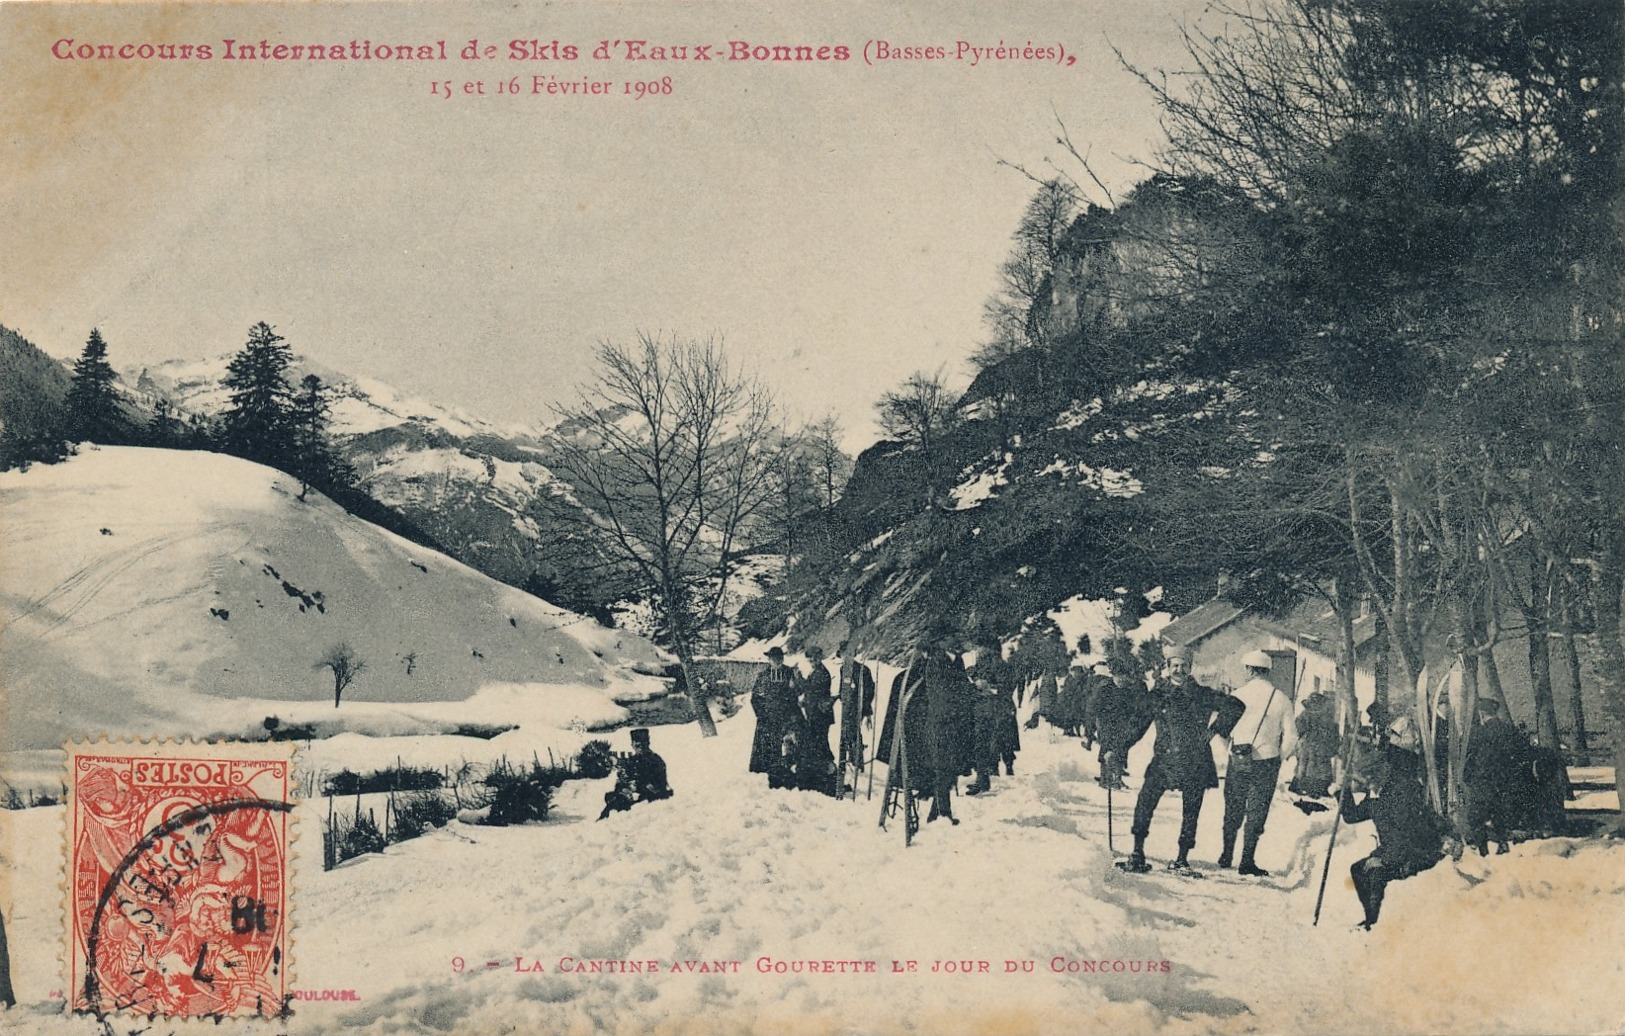 H227 - 64 - EAUX-BONNES - Pyrénées Atlantiques - Concours International De Skis - 15 Et 16 Février 1908 - Eaux Bonnes